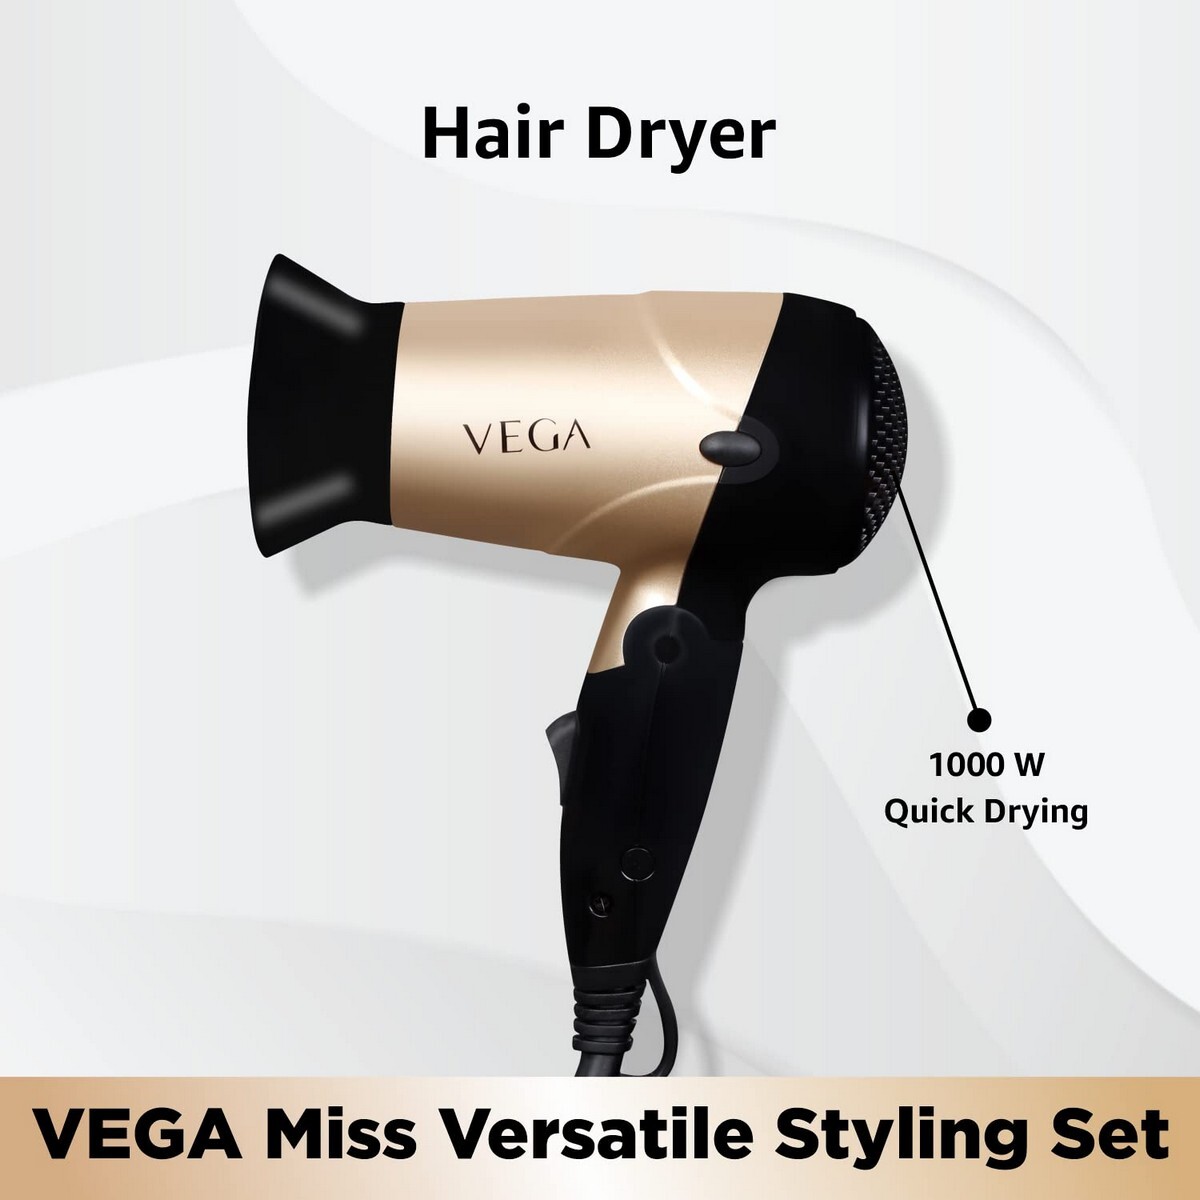 VEGA Miss Versatile Styling Set Straightener, Curler & Dryer Gift Combo VHSS-03